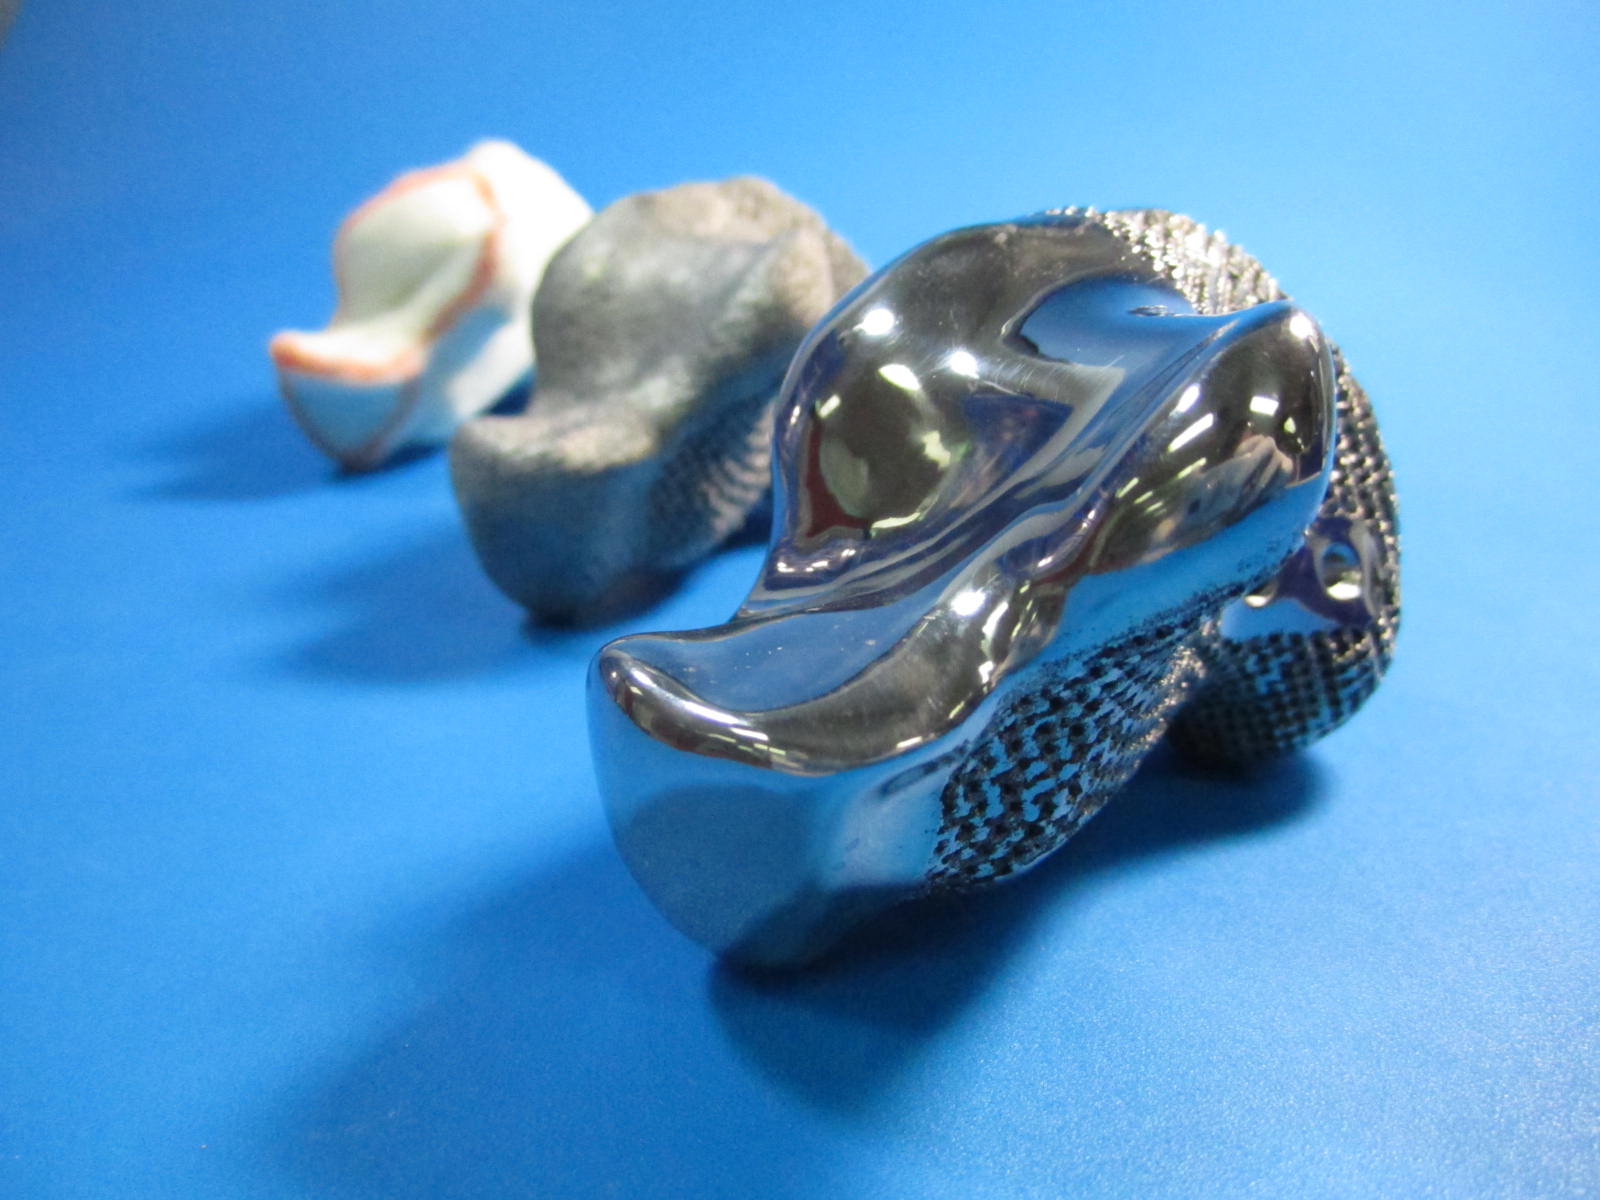 3D printed titanium heel implant